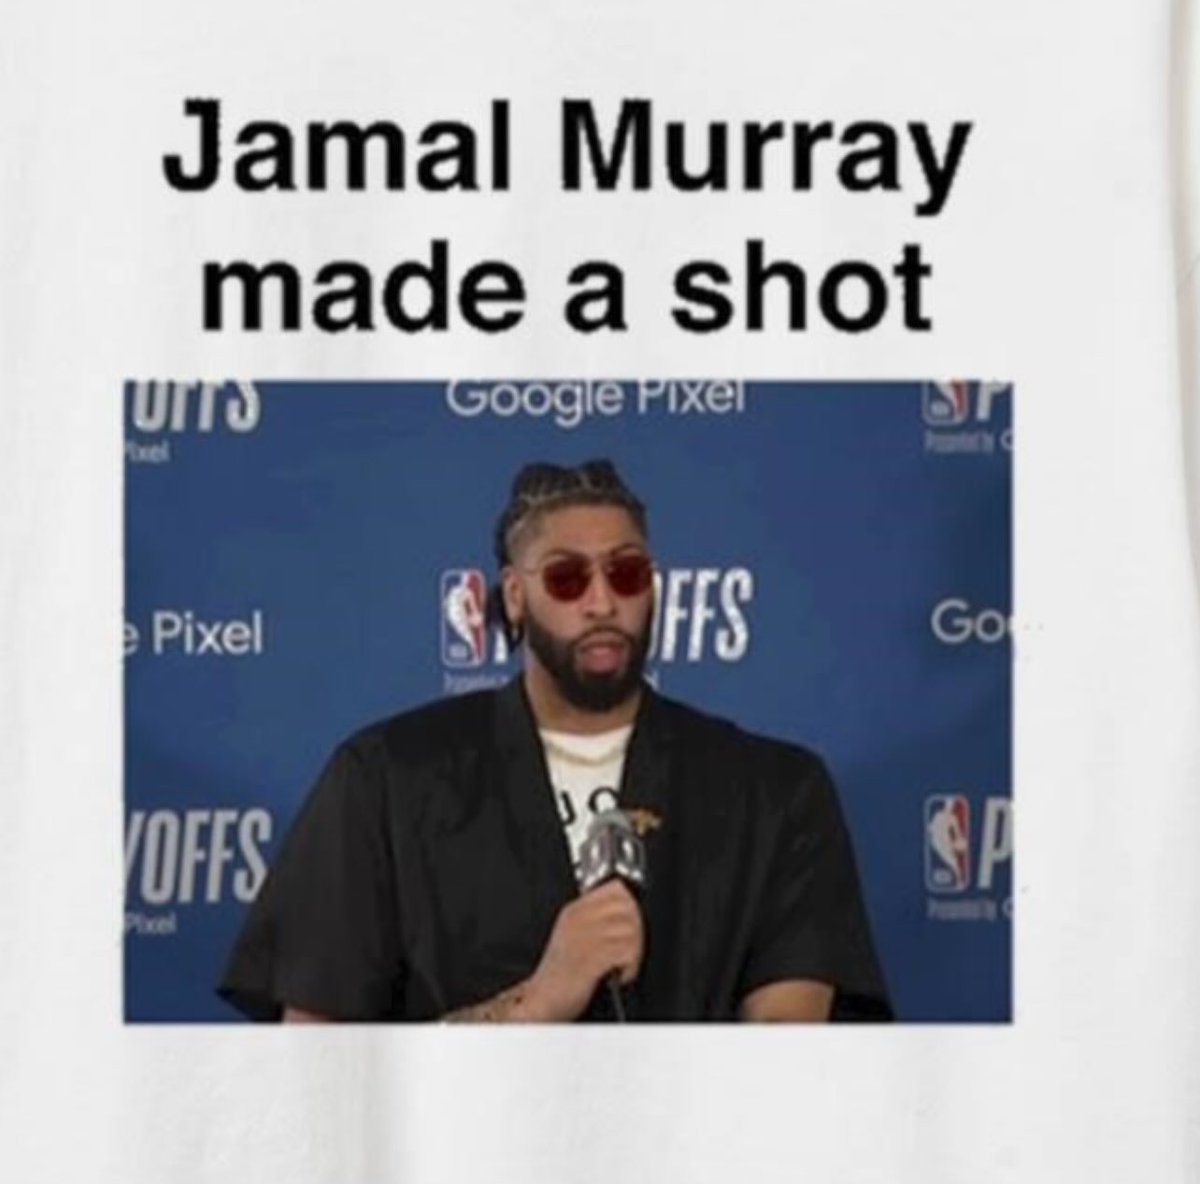 Jamal Murray made *another* shot